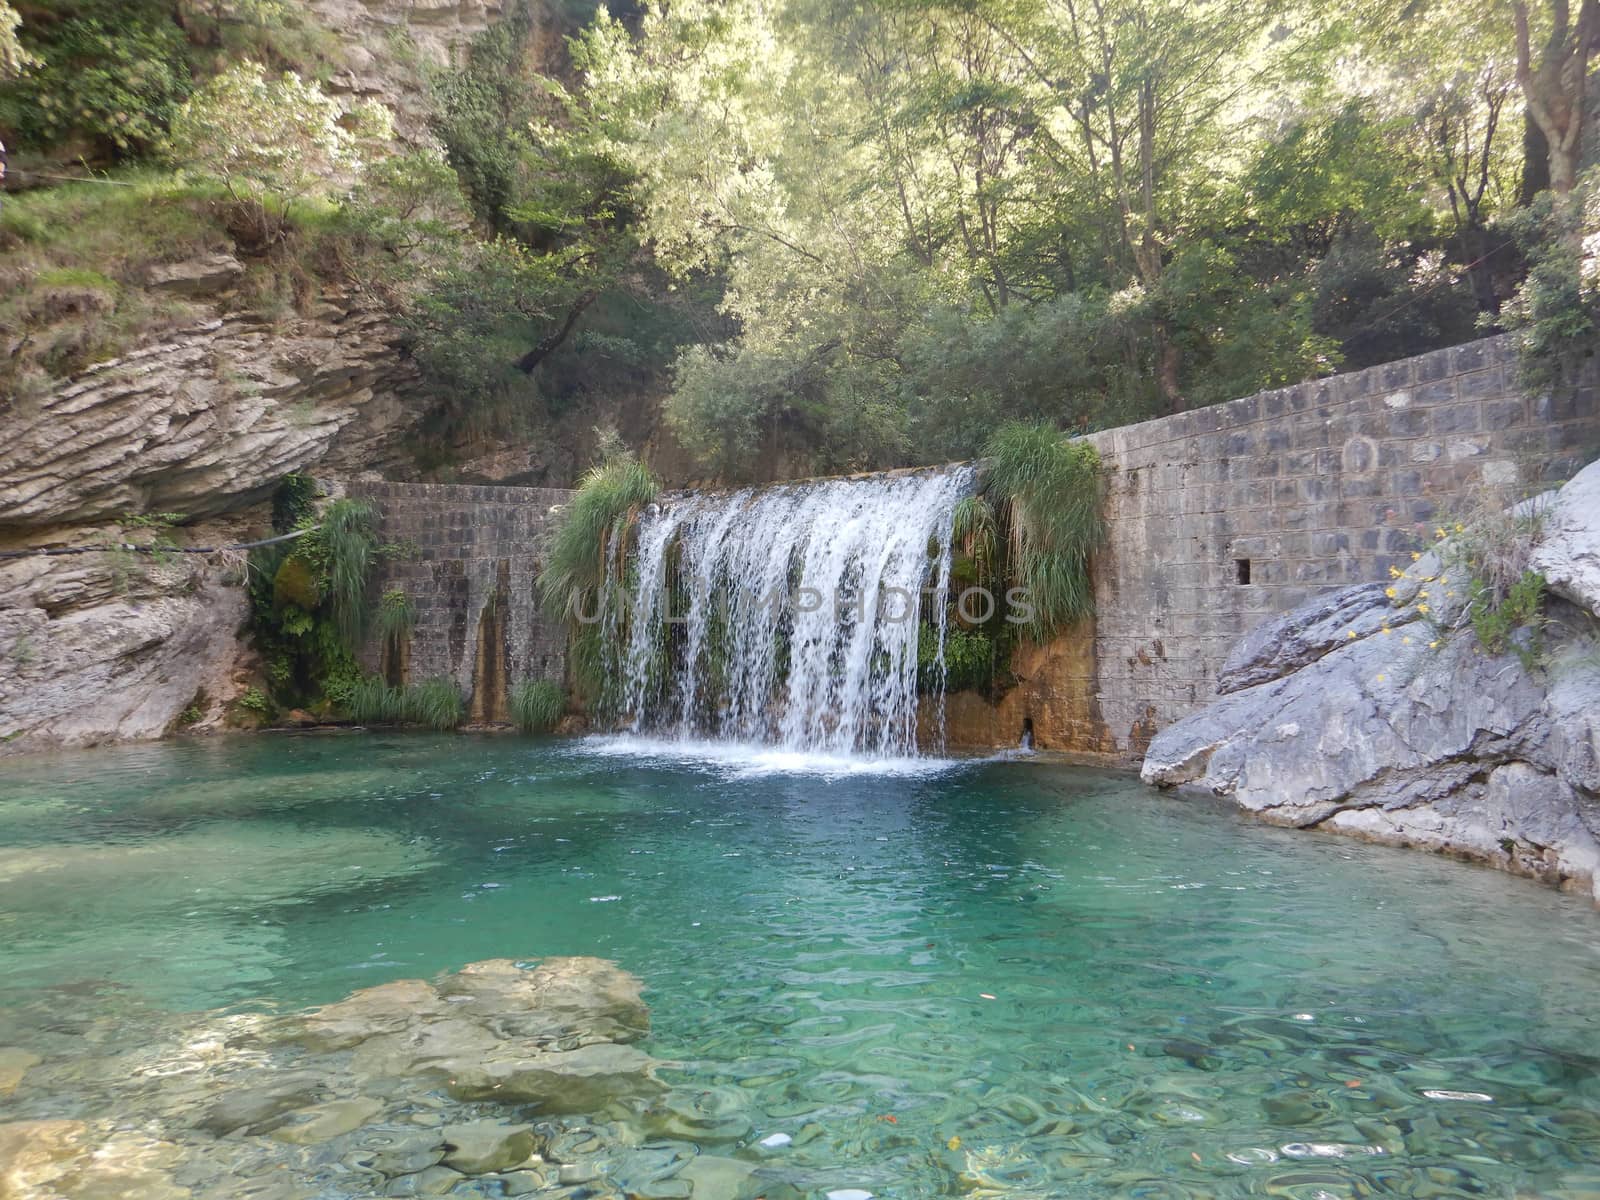 Waterfall in the Rio Barbaira stream, Rocchetta Nervina, Liguria by cosca